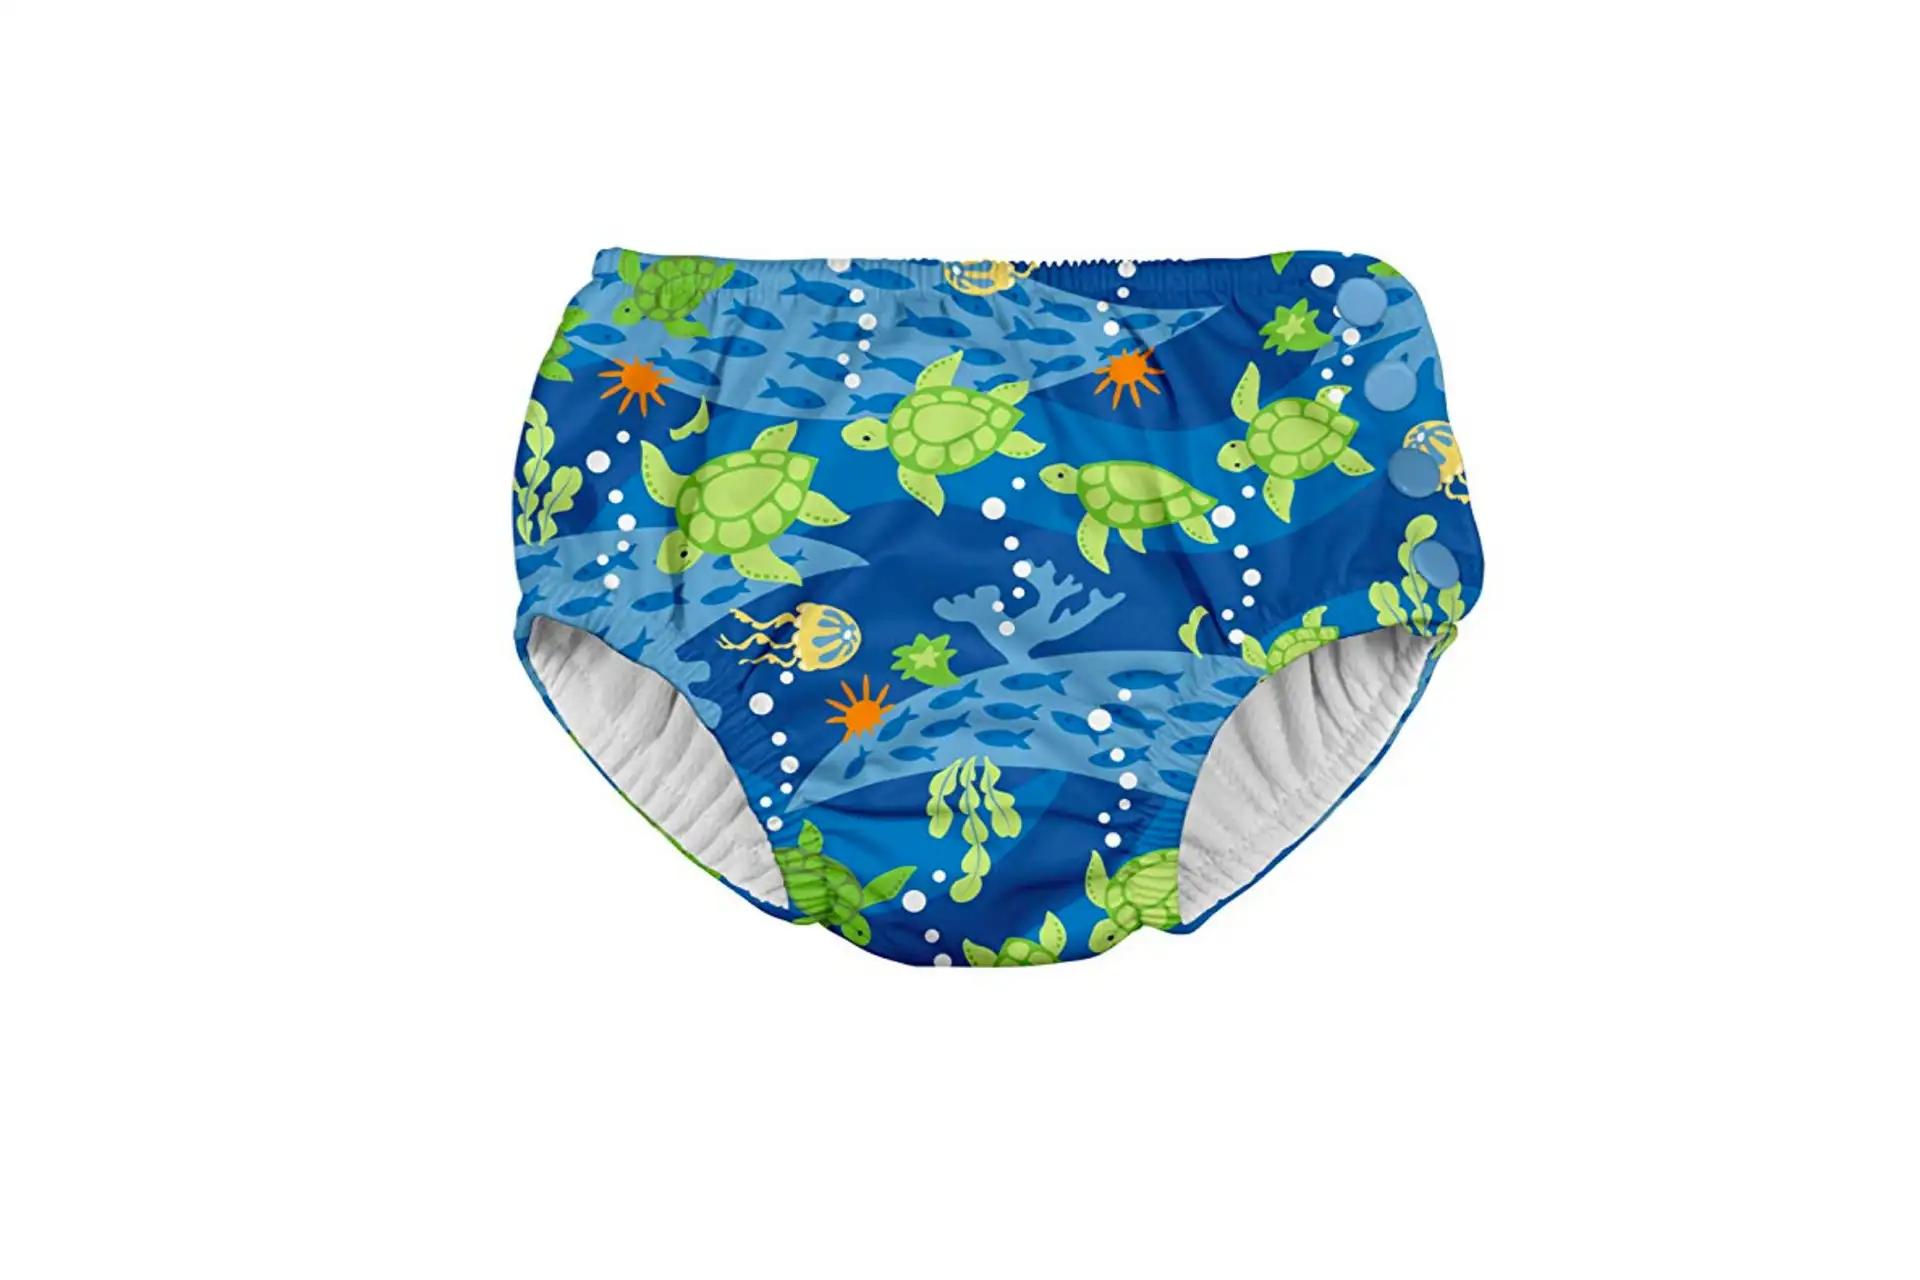 iPlay Swim Diaper; Courtesy of Amazon